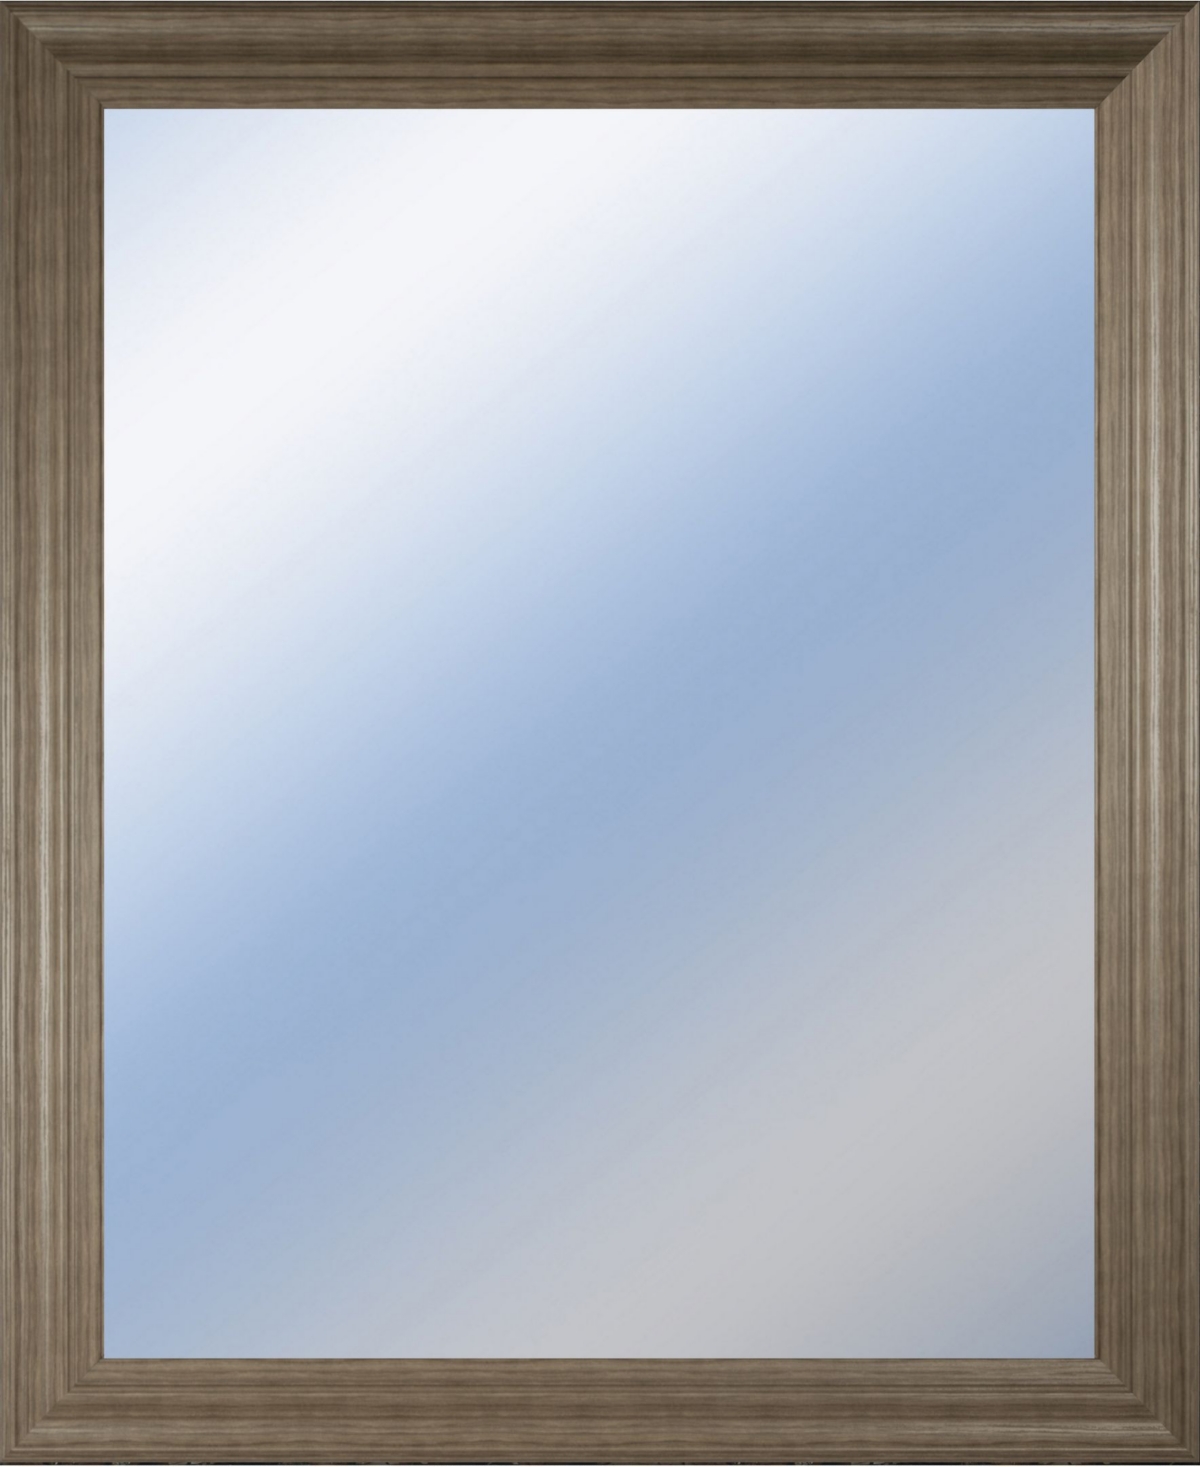 Decorative Framed Wall Mirror, 34" x 40" - Silver